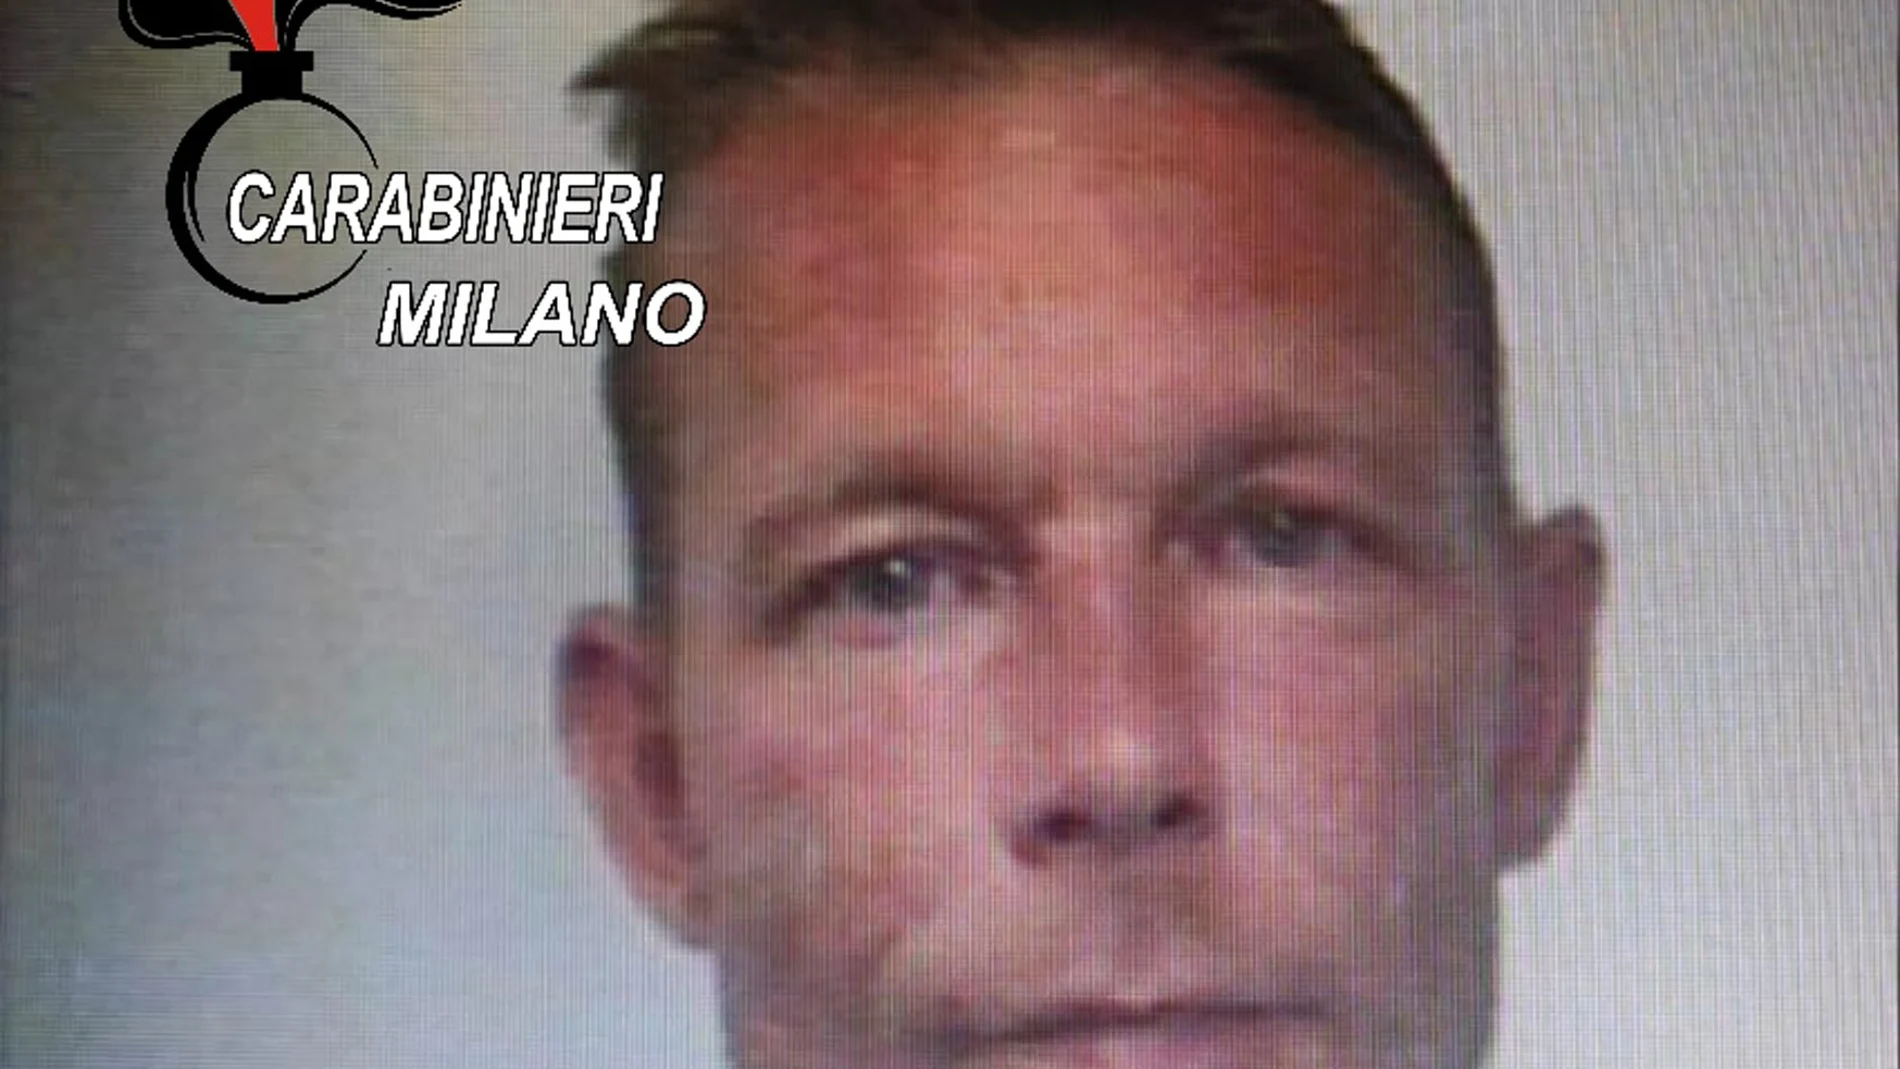 Imagen de la ficha policial de Brueckner cuando fue detenido en Italia por un delito de tráfico de drogas